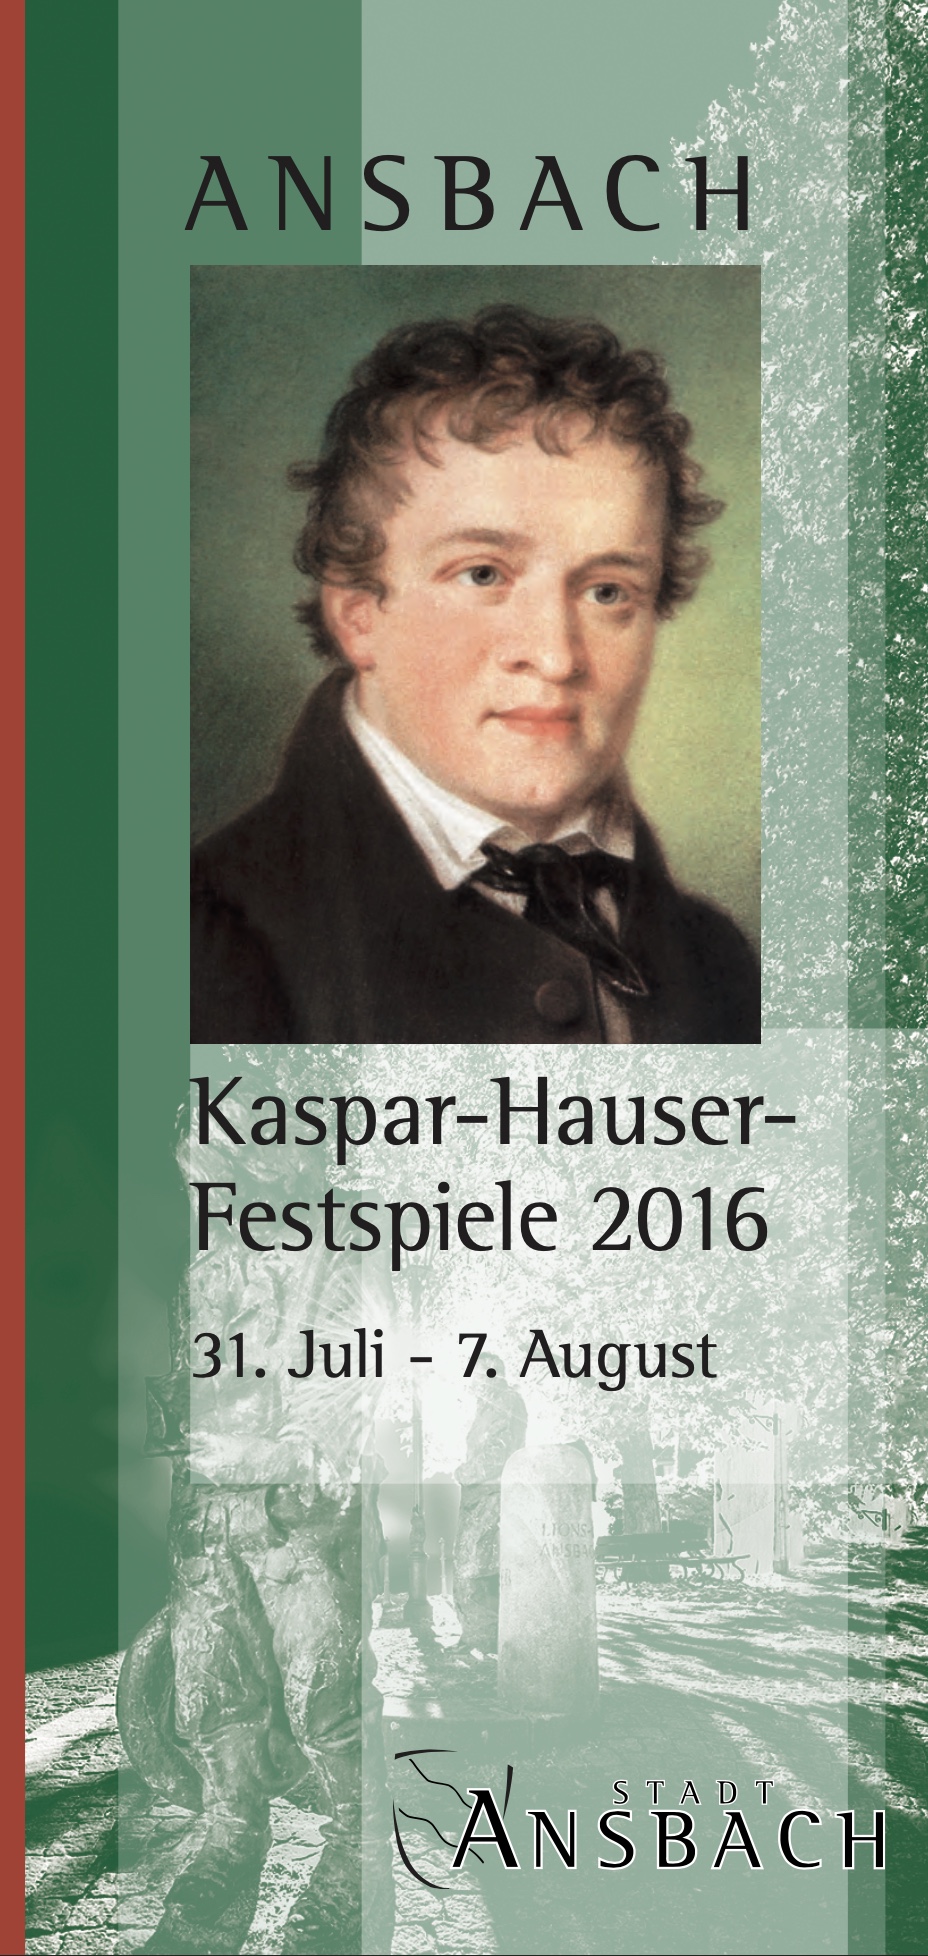 Kaspar-Hauser Festspiele 2016